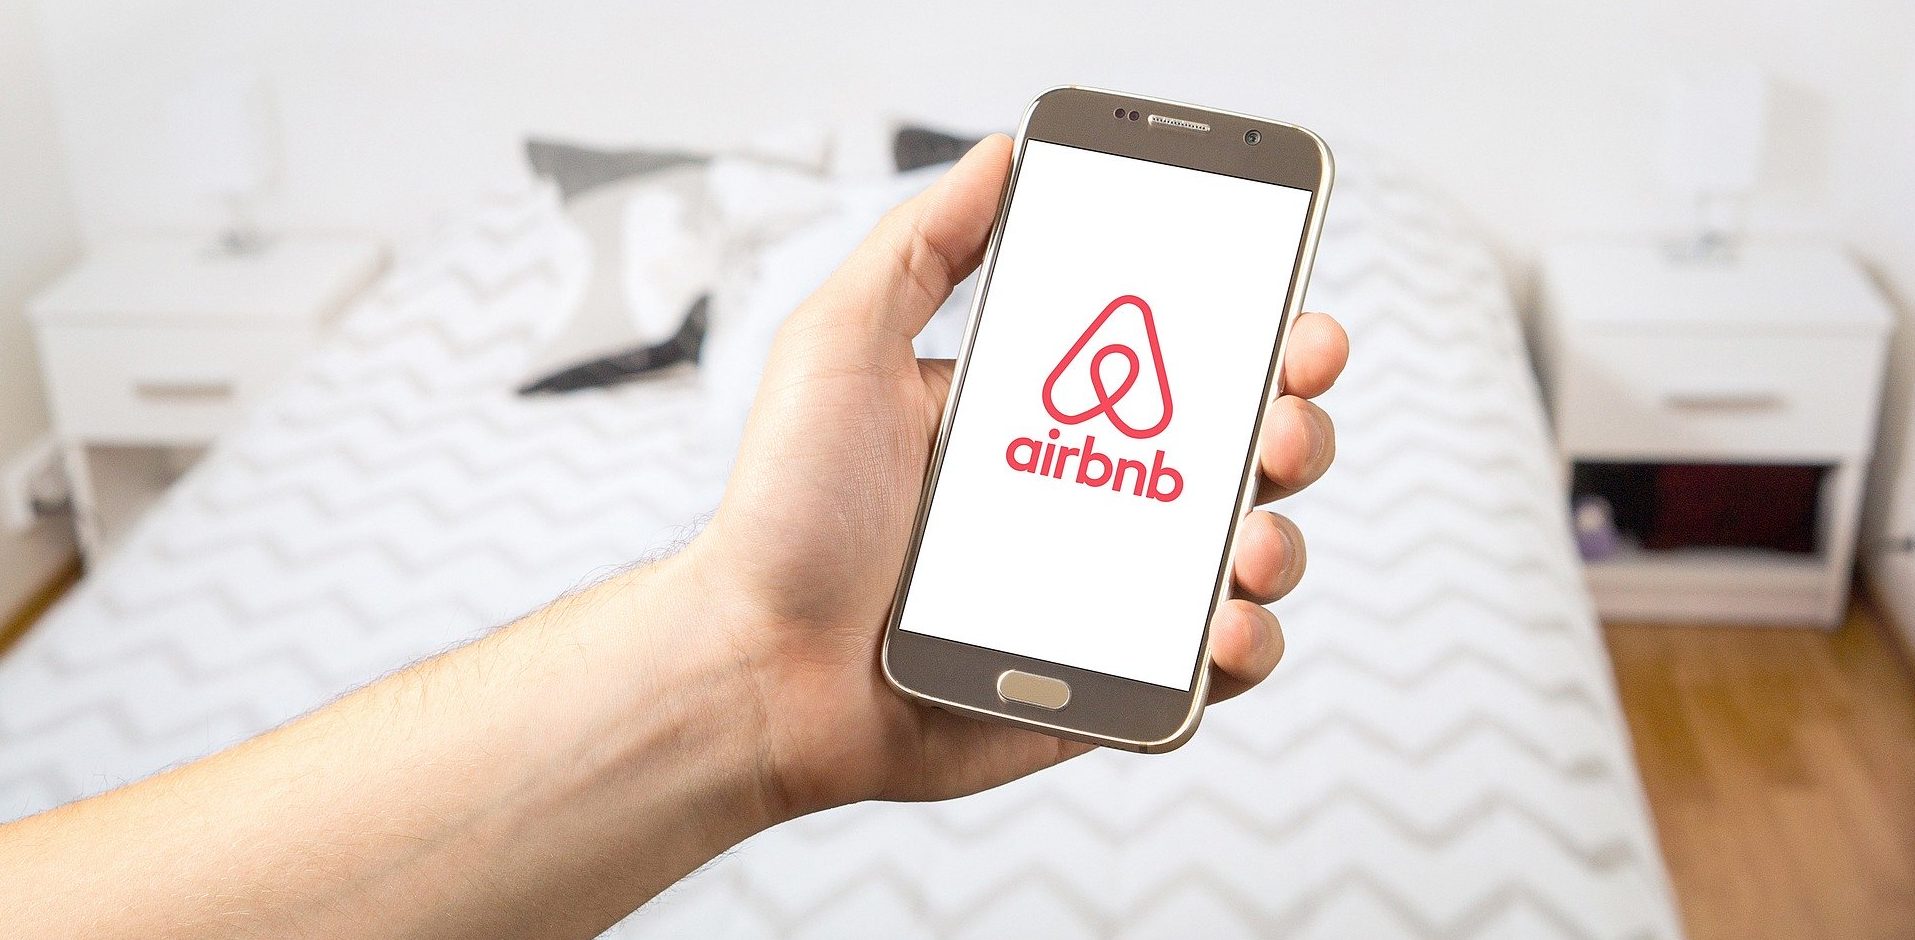 Airbnb elimina la prenotazione immediata per il coronavirus